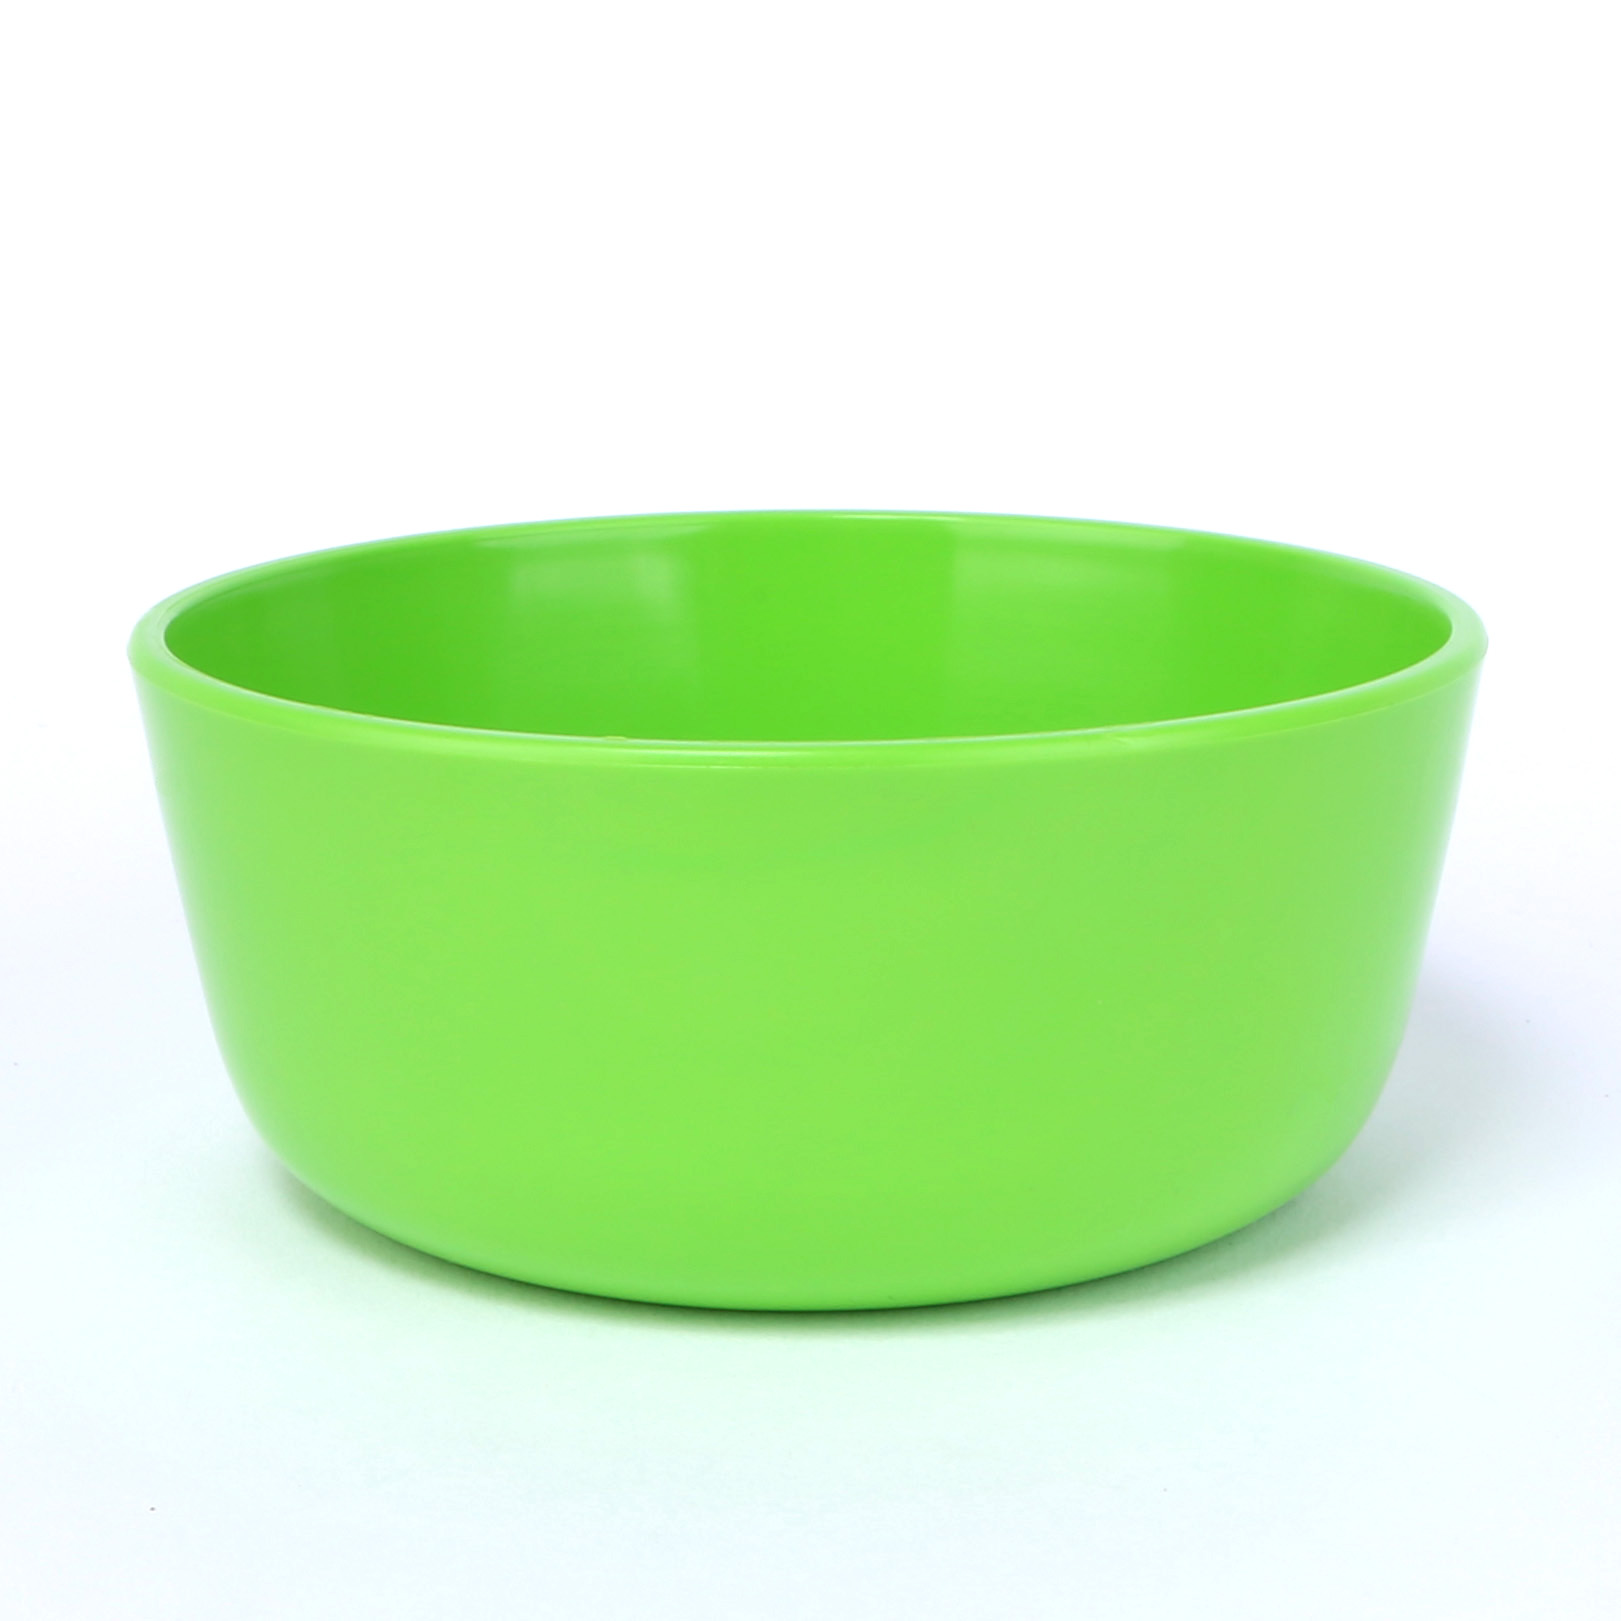 vaLon Zephyr hohe Dessertschale 11 cm aus schadstofffreiem Kunststoff in der Farbe grasgrün.